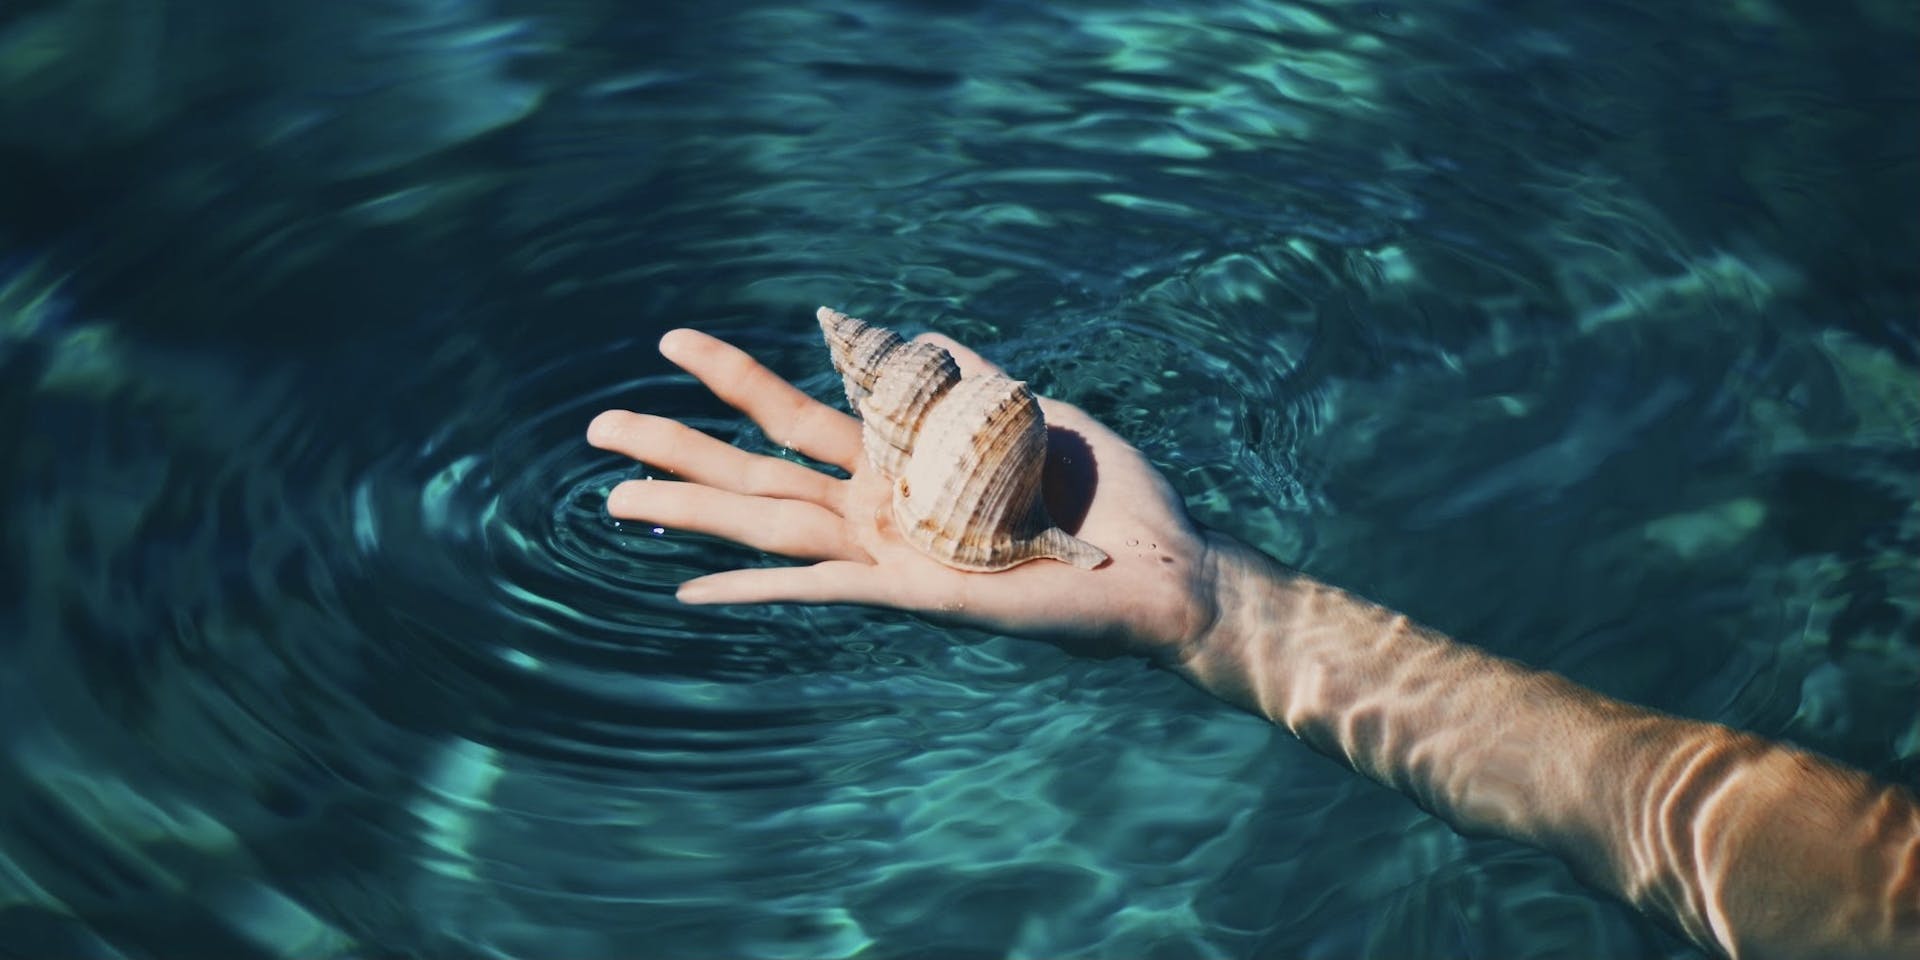 El brazo de una persona blanca se extiende hacia un cuerpo de agua azul turquesa que sostiene una concha marina.